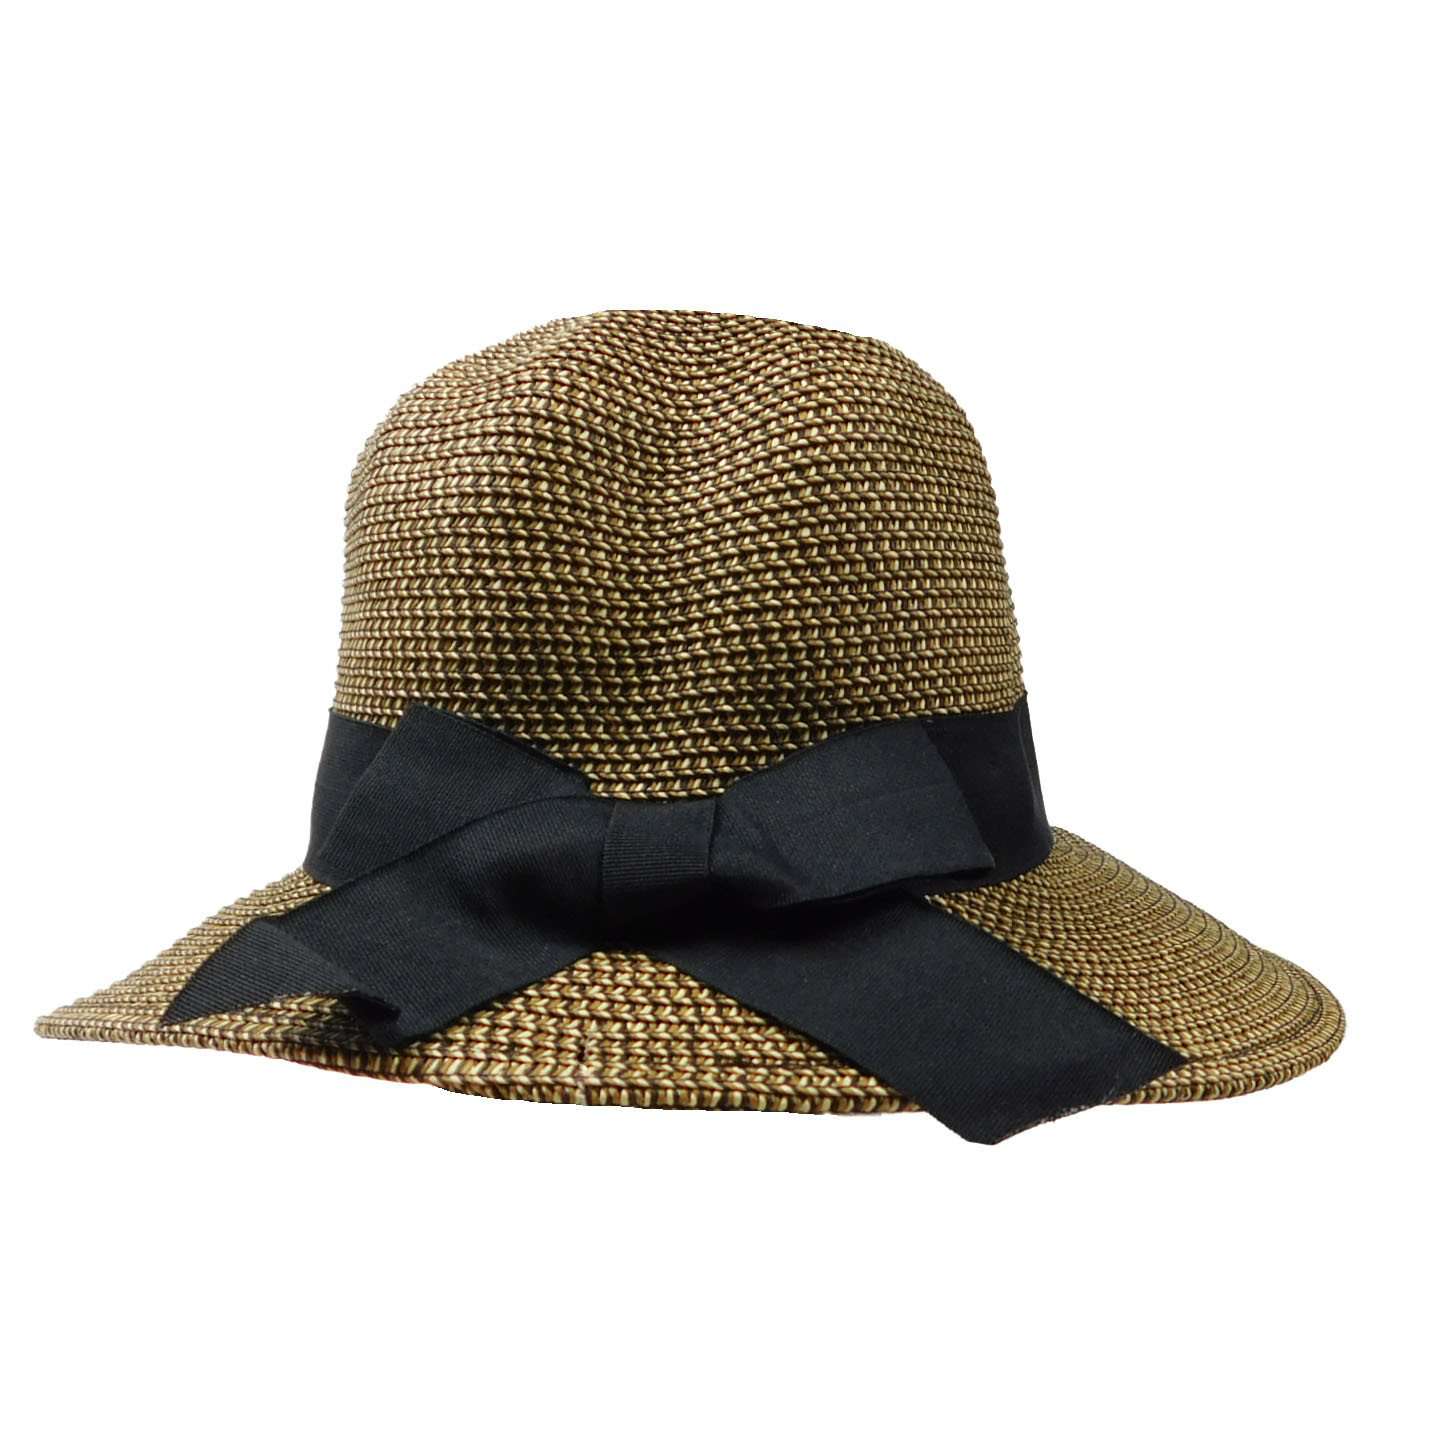 Asymmetrical Brim Summer Hat - Large and XL Size Women's Hats Wide Brim Hat Jeanne Simmons js8209BtXL Black Tweed X-Large (61 cm) 